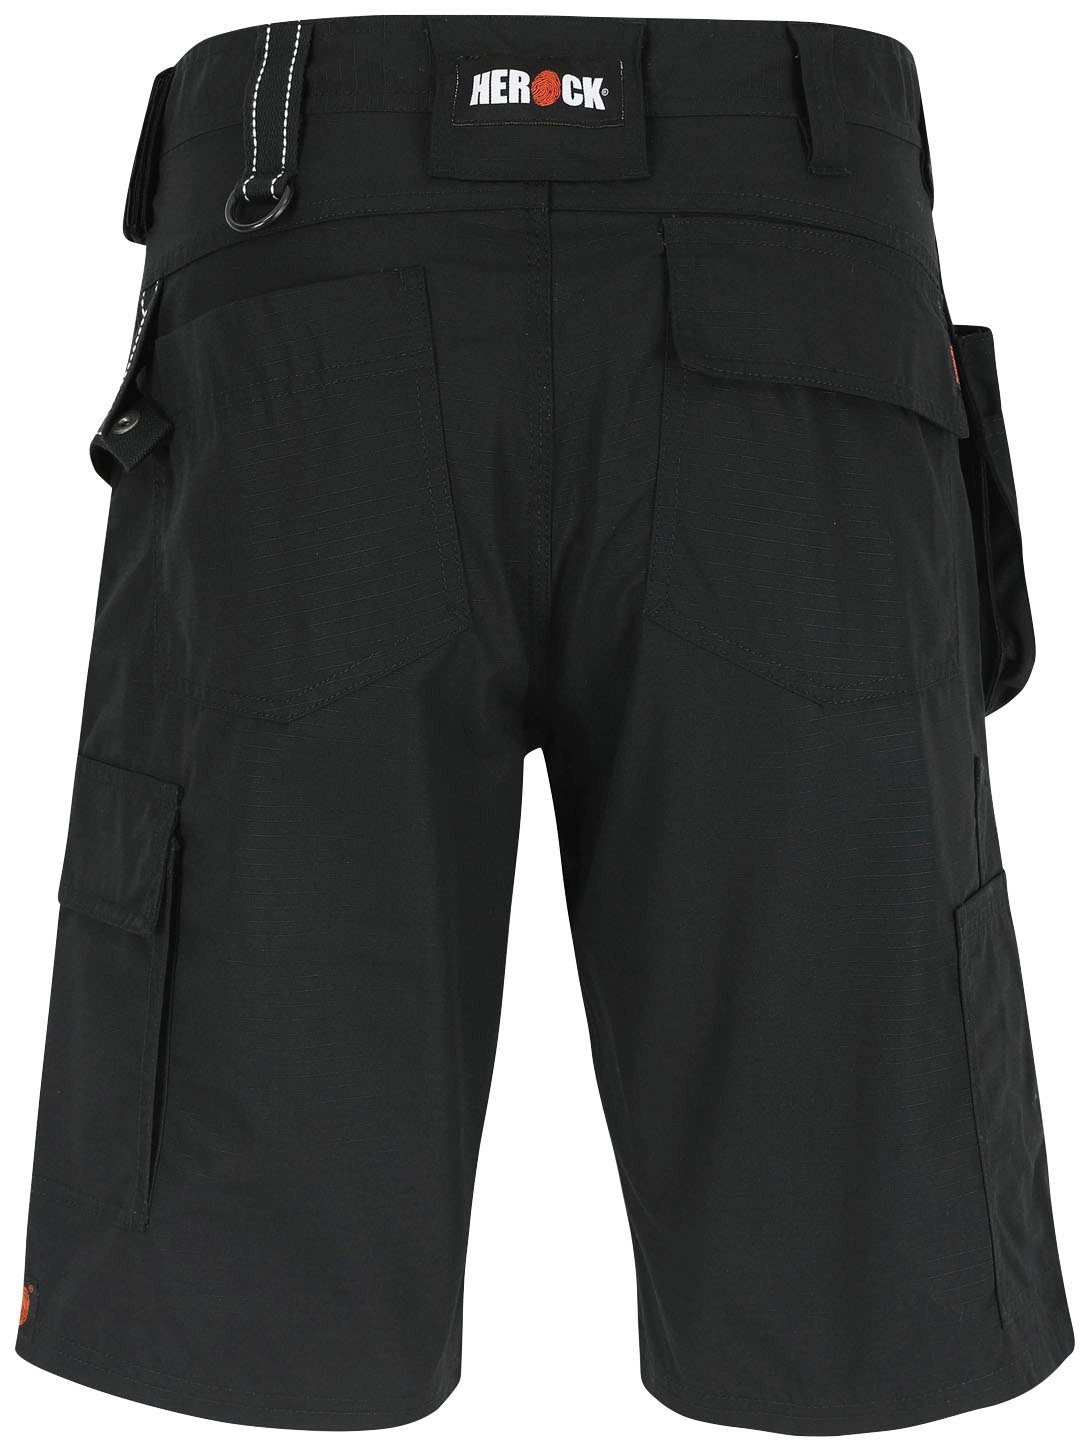 Bundschlaufe), 1 Arbeitshose Vielen Hammerschlaufe Nageltasche Bermudas schwarz Taschen (inkl. Batua Herock &